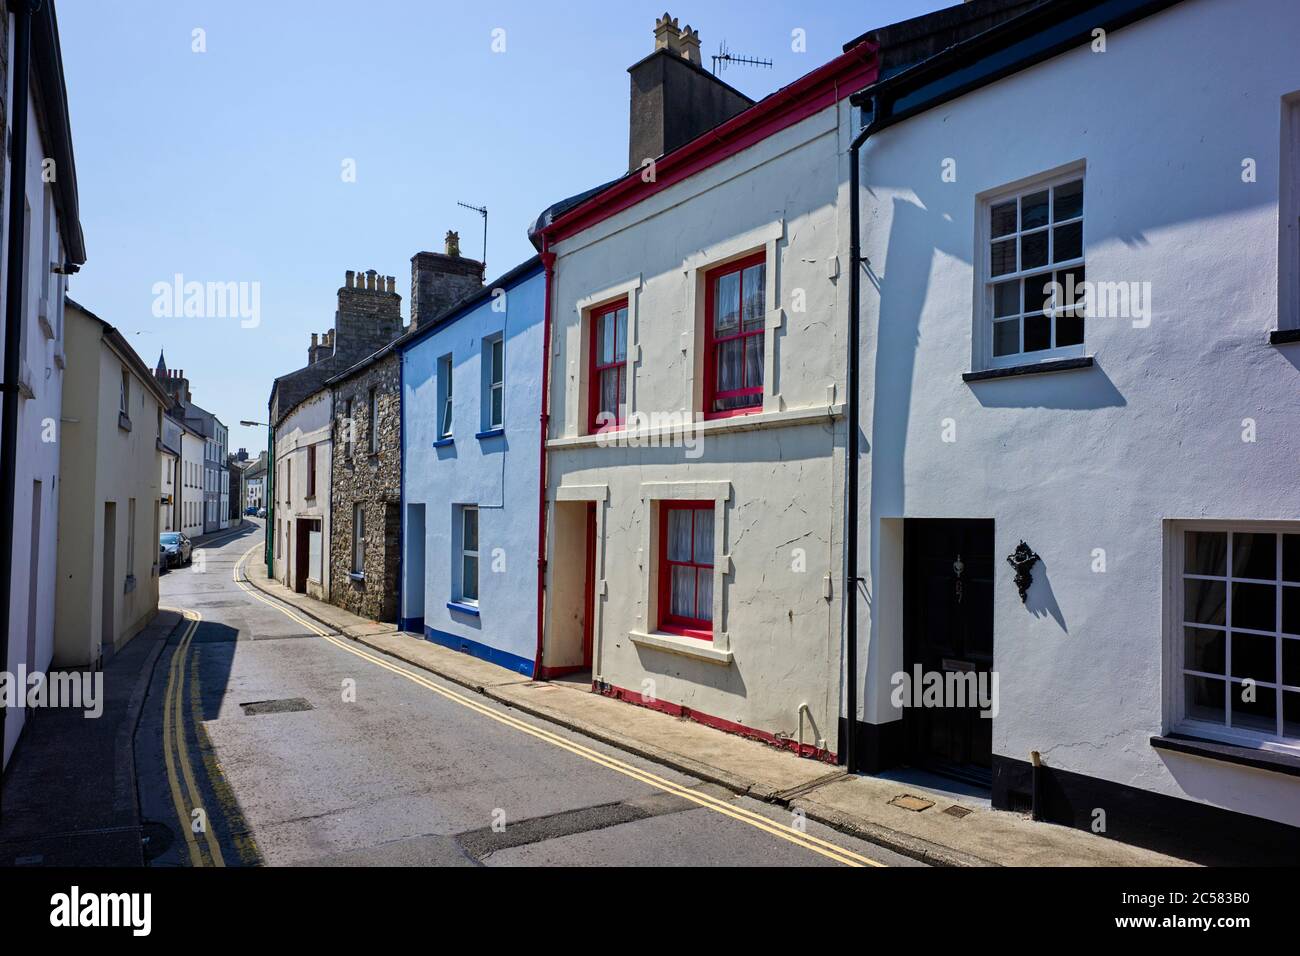 Maison traditionnelle de style Manx 65 Malew Street, Castletown, Isle of Man avec des fenêtres à guillotine originales peintes en rouge et crème Banque D'Images